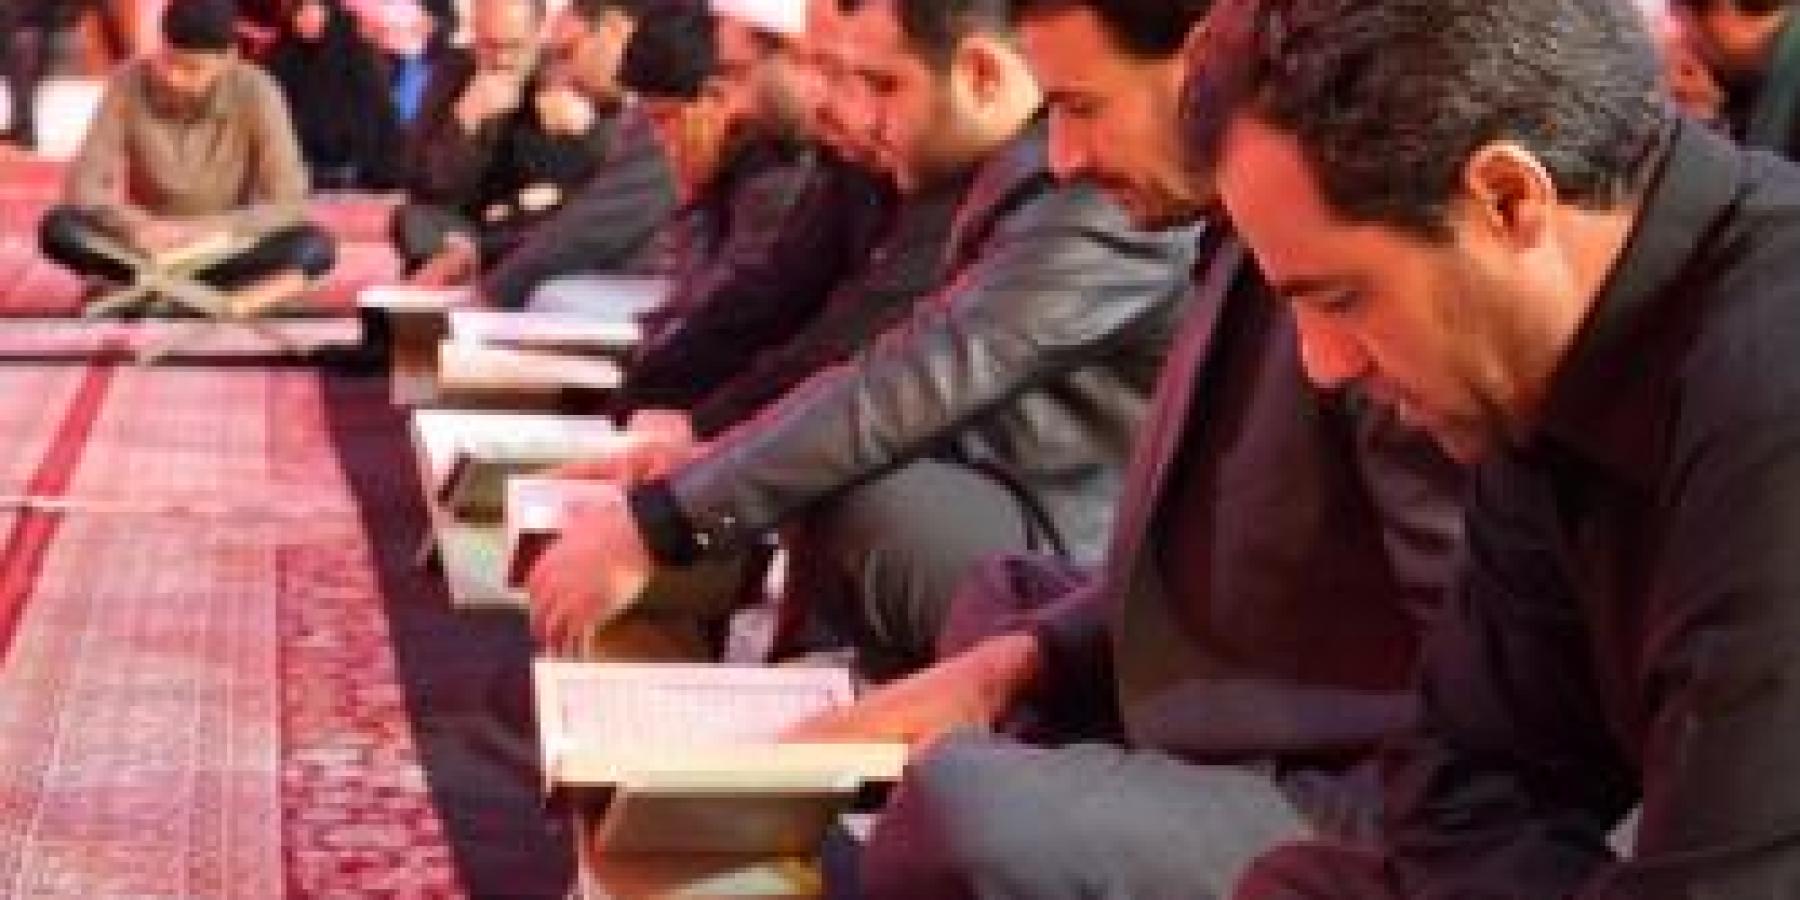 وحدة المحافل القرآنية في العتبة العلوية المقدسة تحتضن محفلا قرآنية ليلة العاشر من محرم الحرام